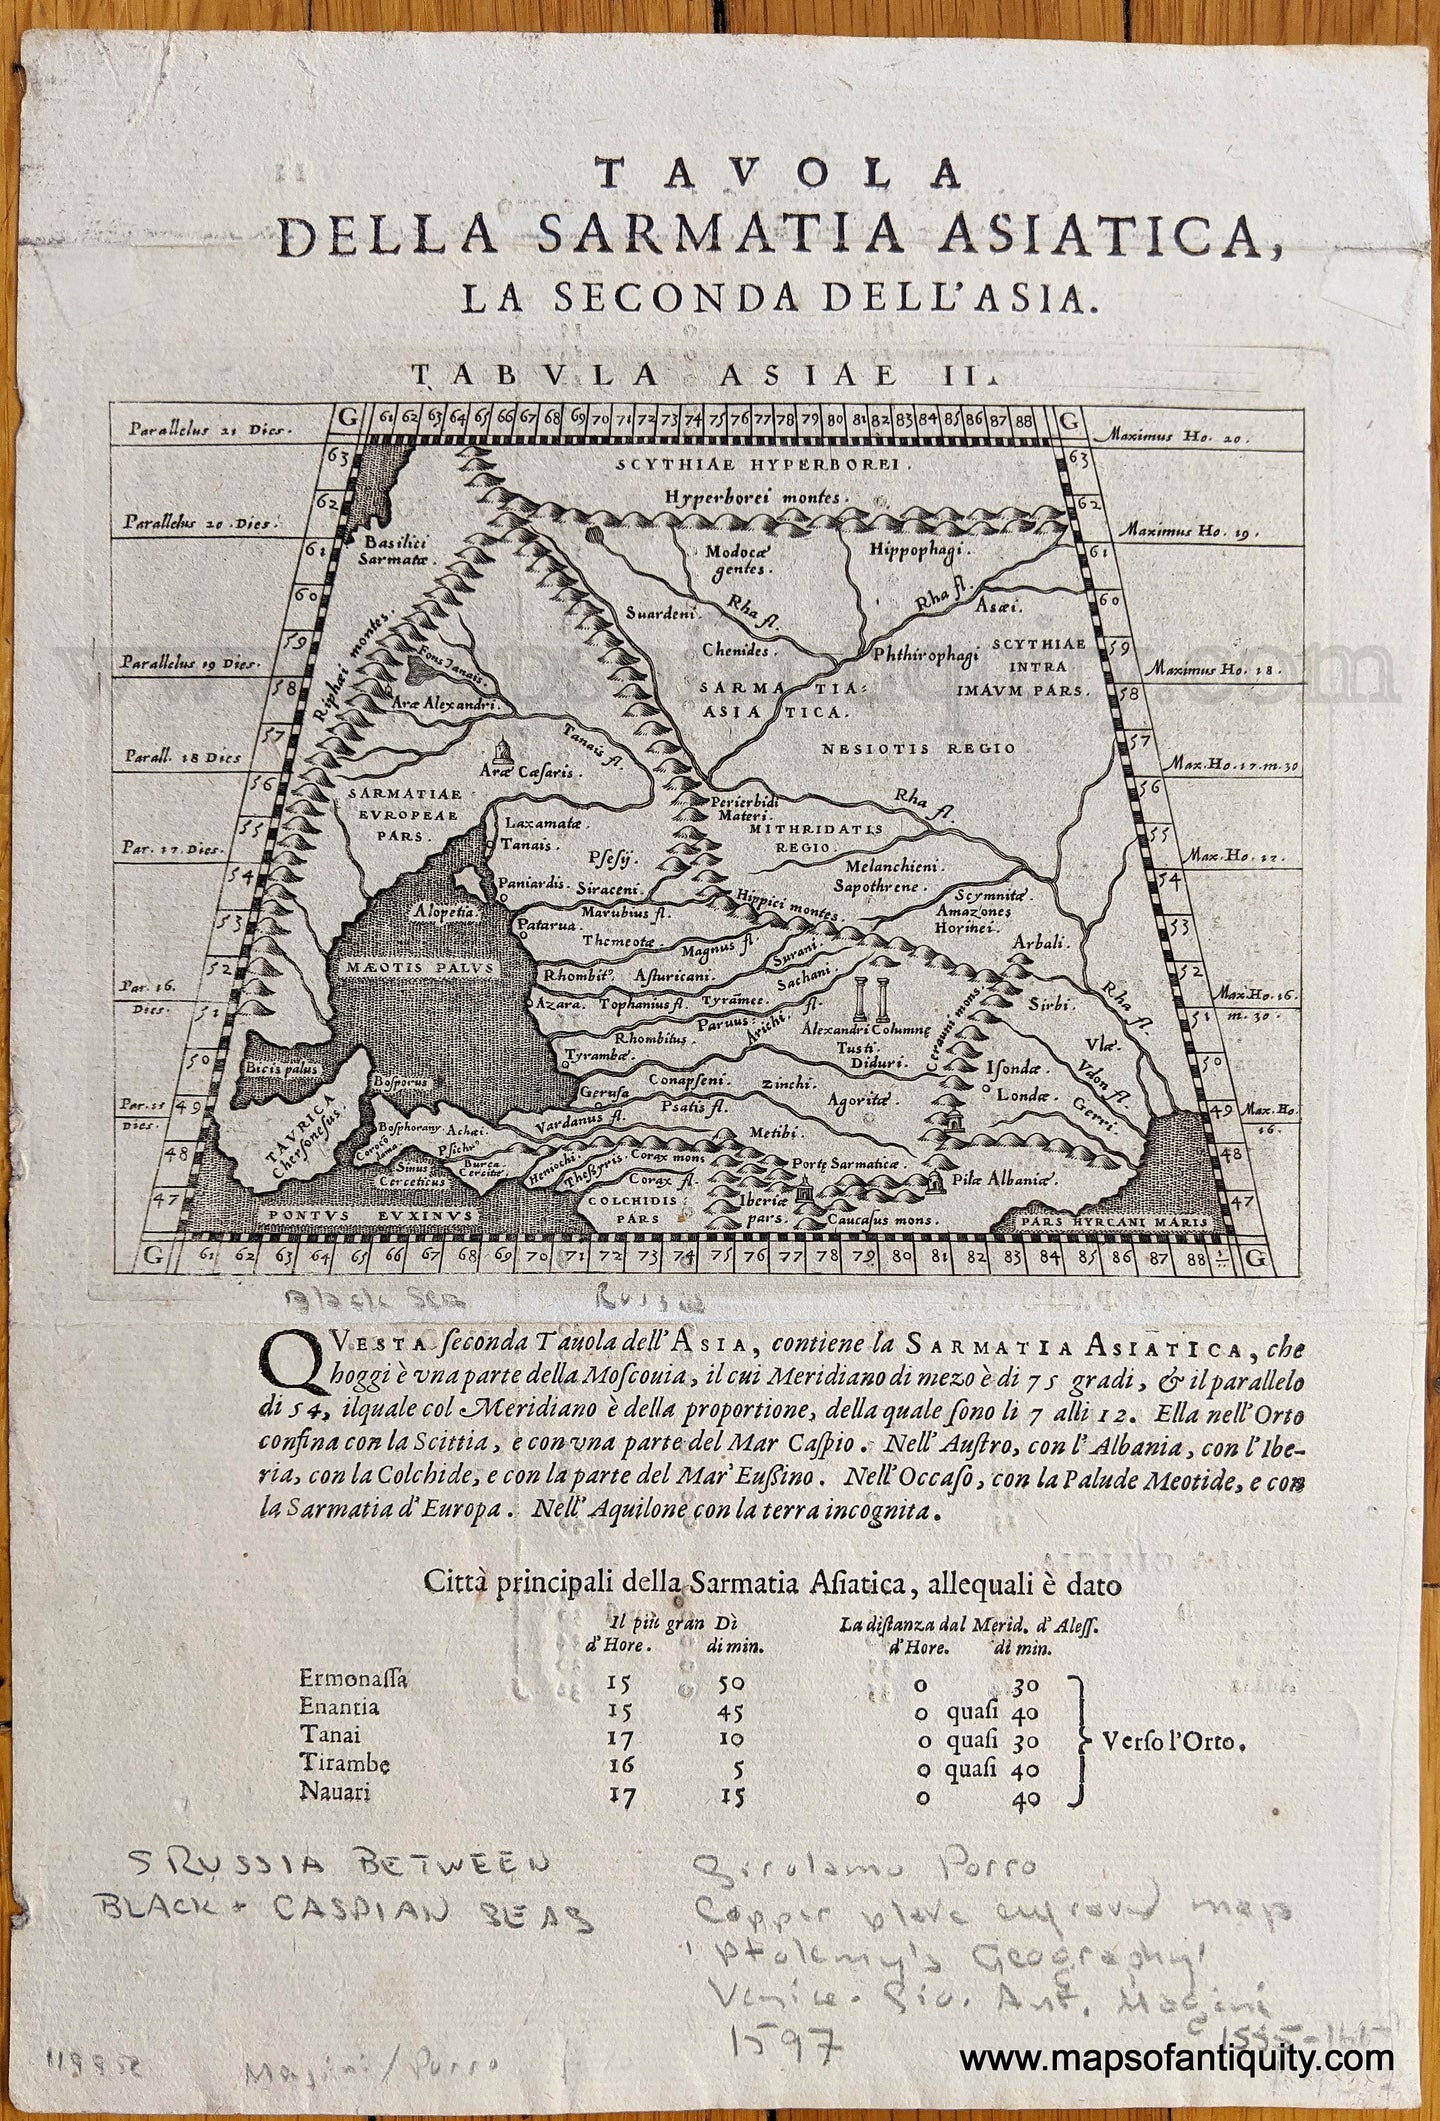 Genuine-Antique-Map-Tavola-della-Sarmatia-Asiatica-la-Seconda-Dell'Asia-(Second-Ptolemy-map-of-Asia)-Asia-Russia-in-Asia-1598-Magini-Maps-Of-Antiquity-1800s-19th-century